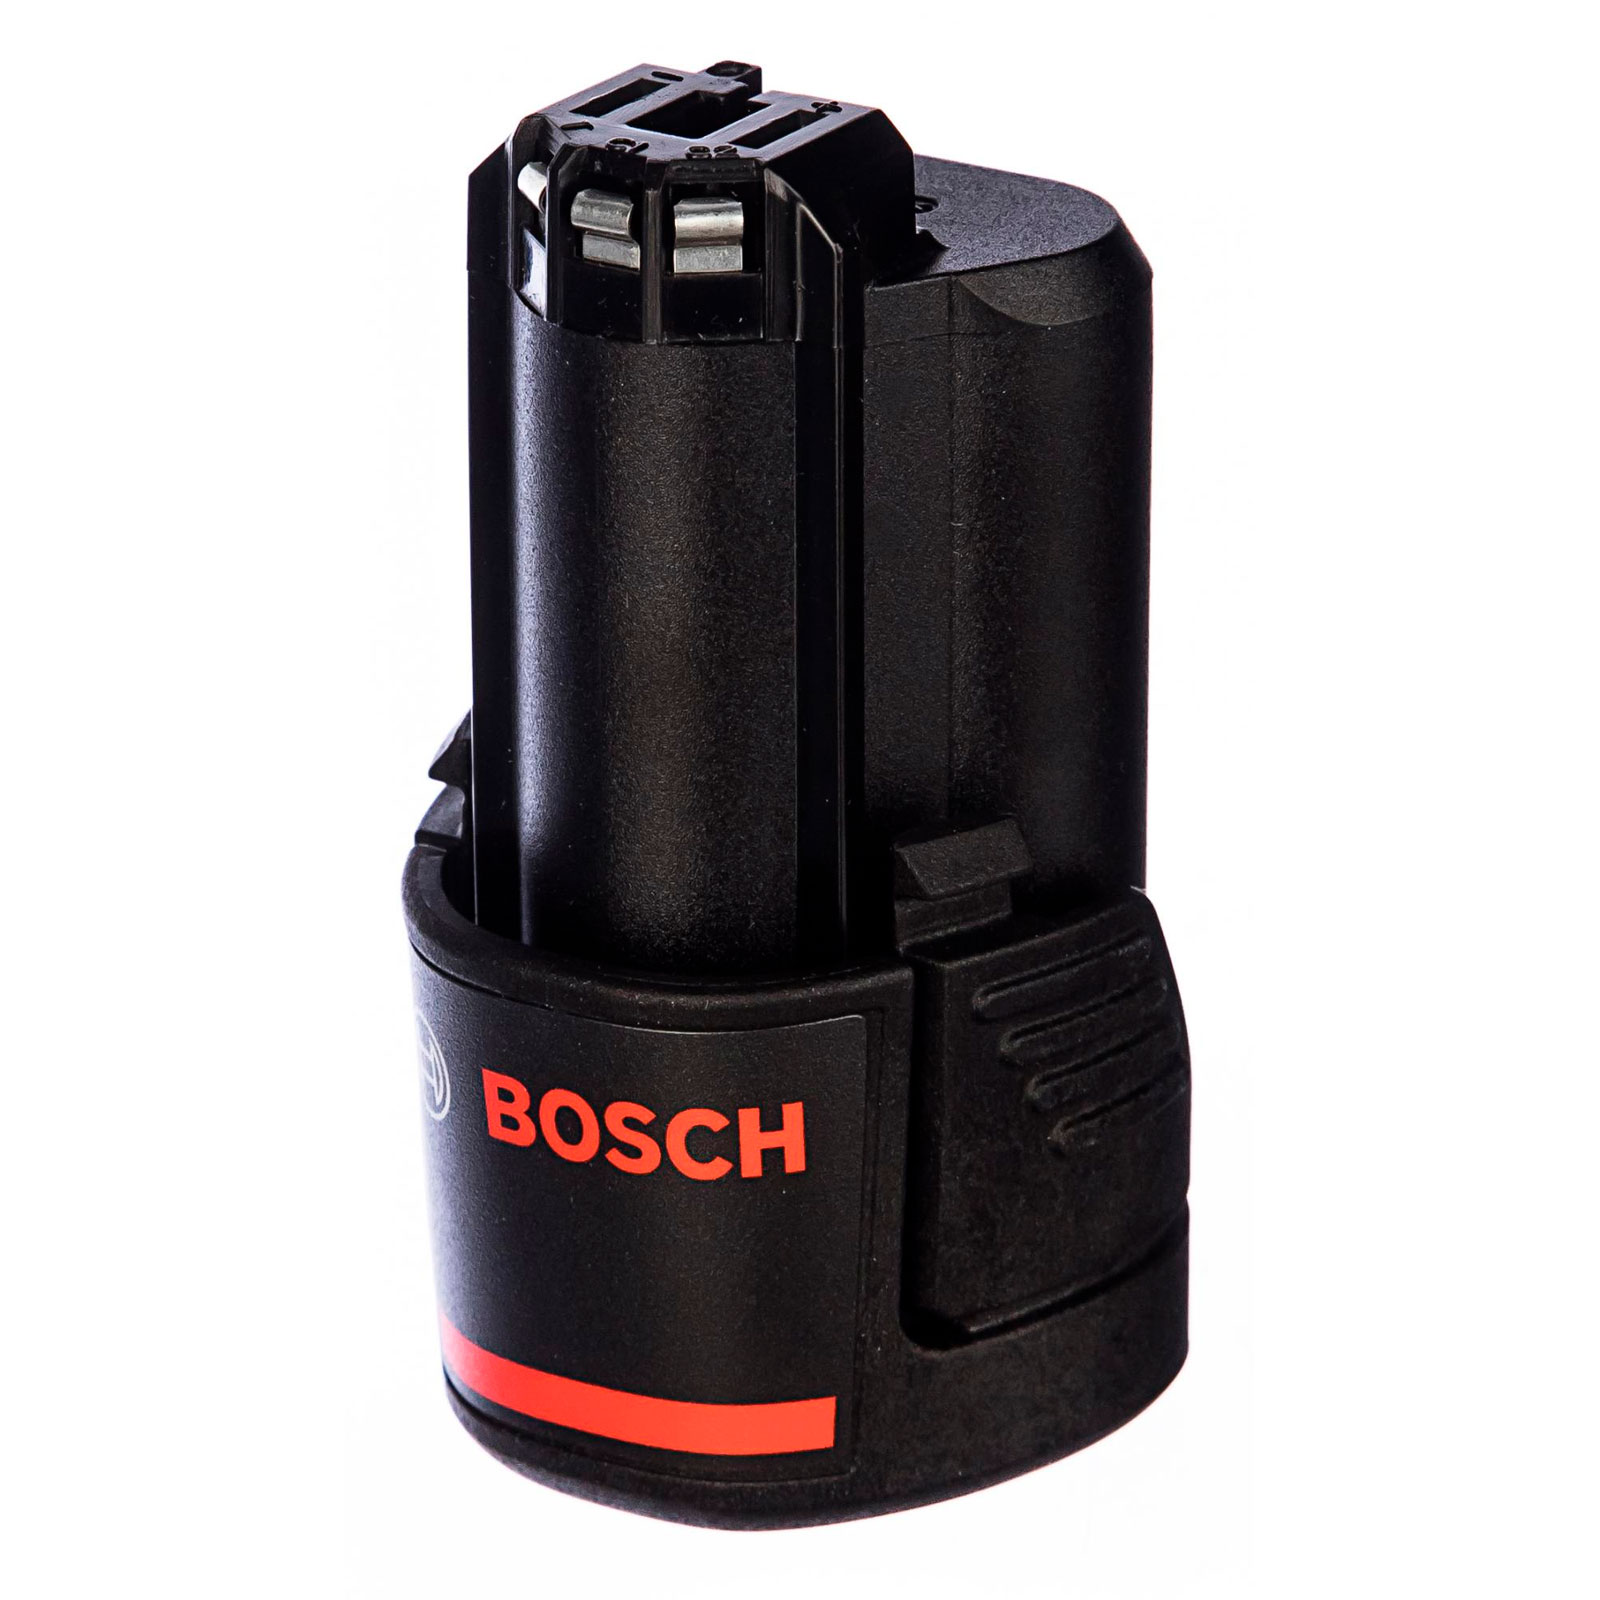 Аккумулятор Bosch GBA 12V 2.0Ah